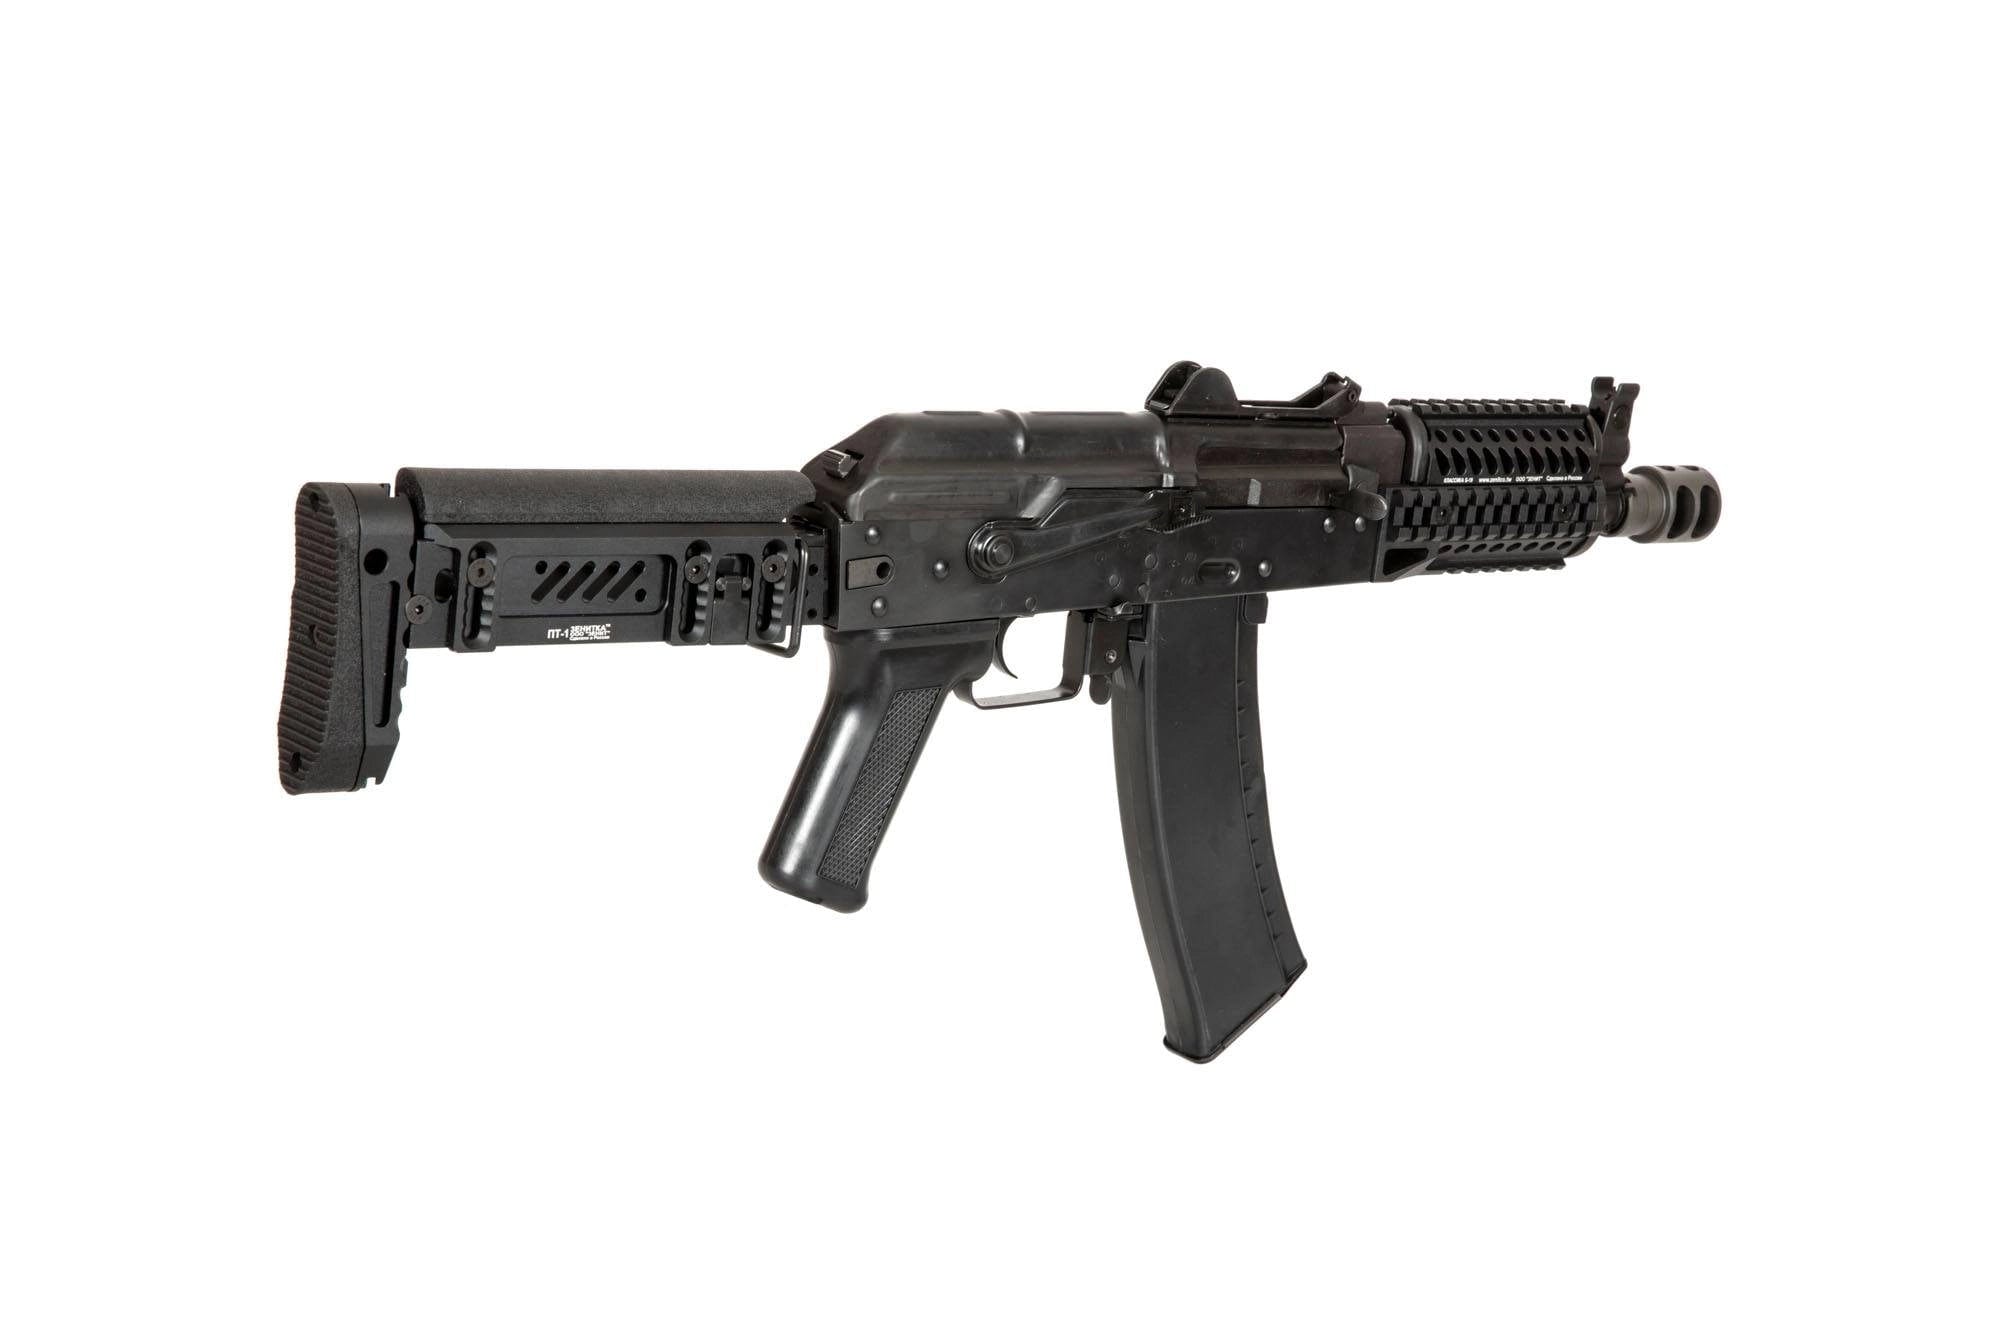 ZKS-74UN Carbine Replica